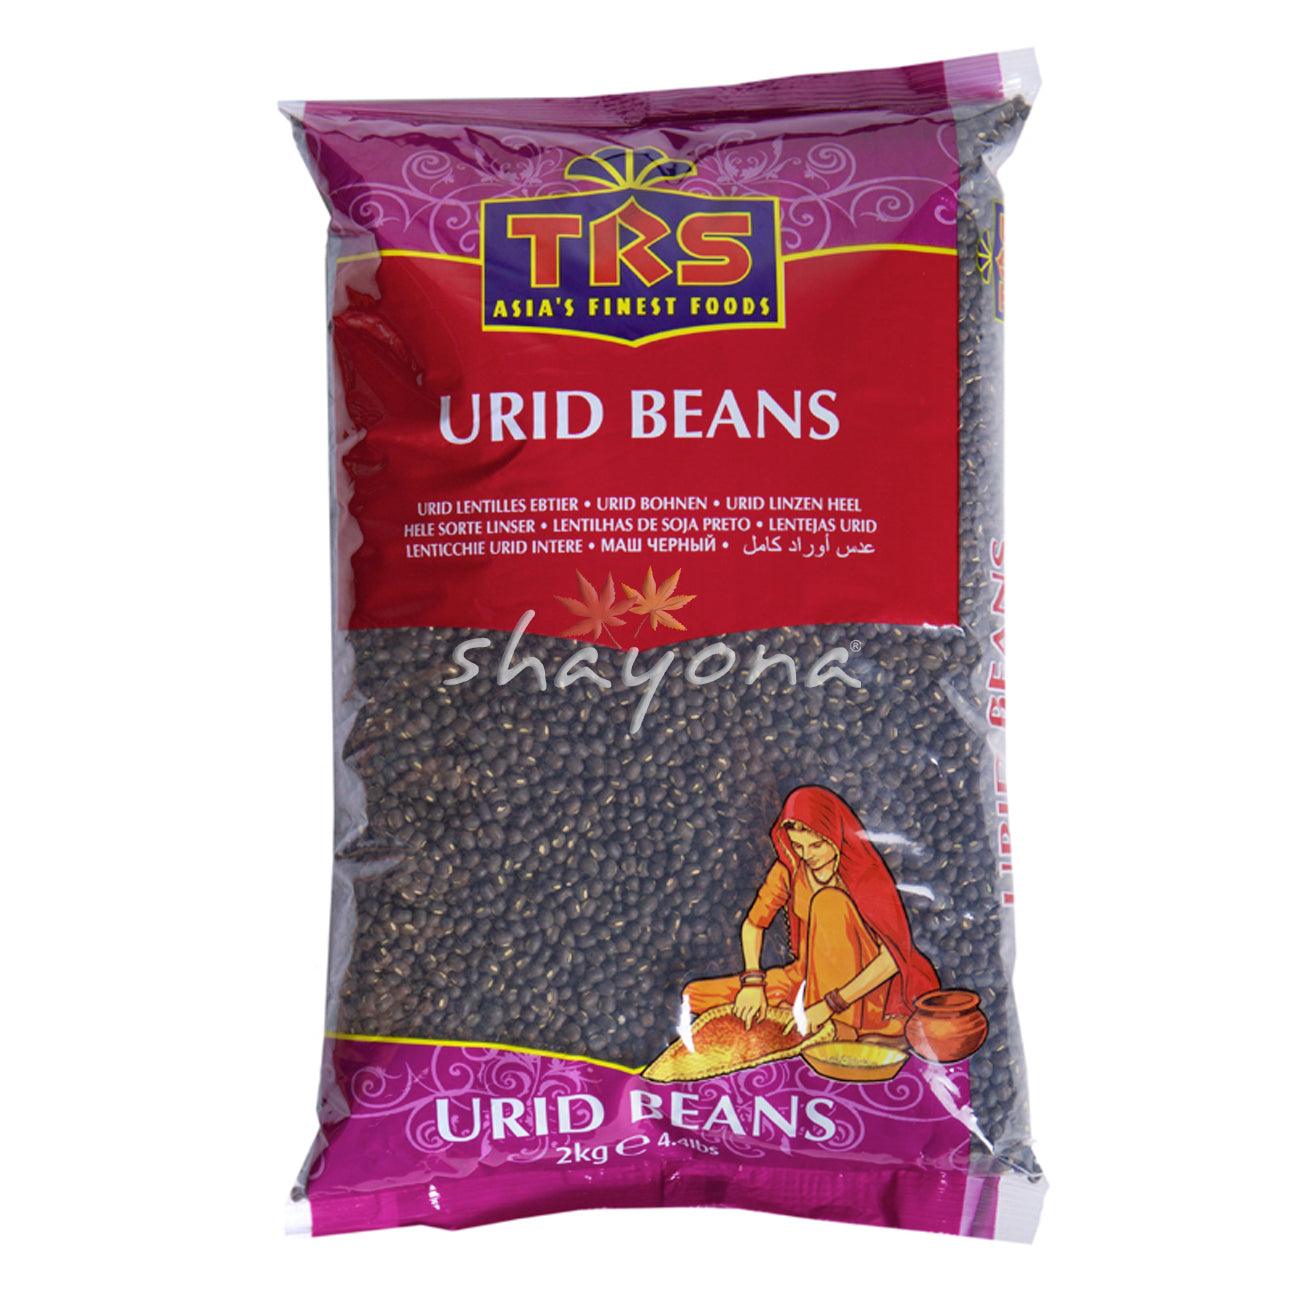 TRS Urid Beans Whole - Shayona UK